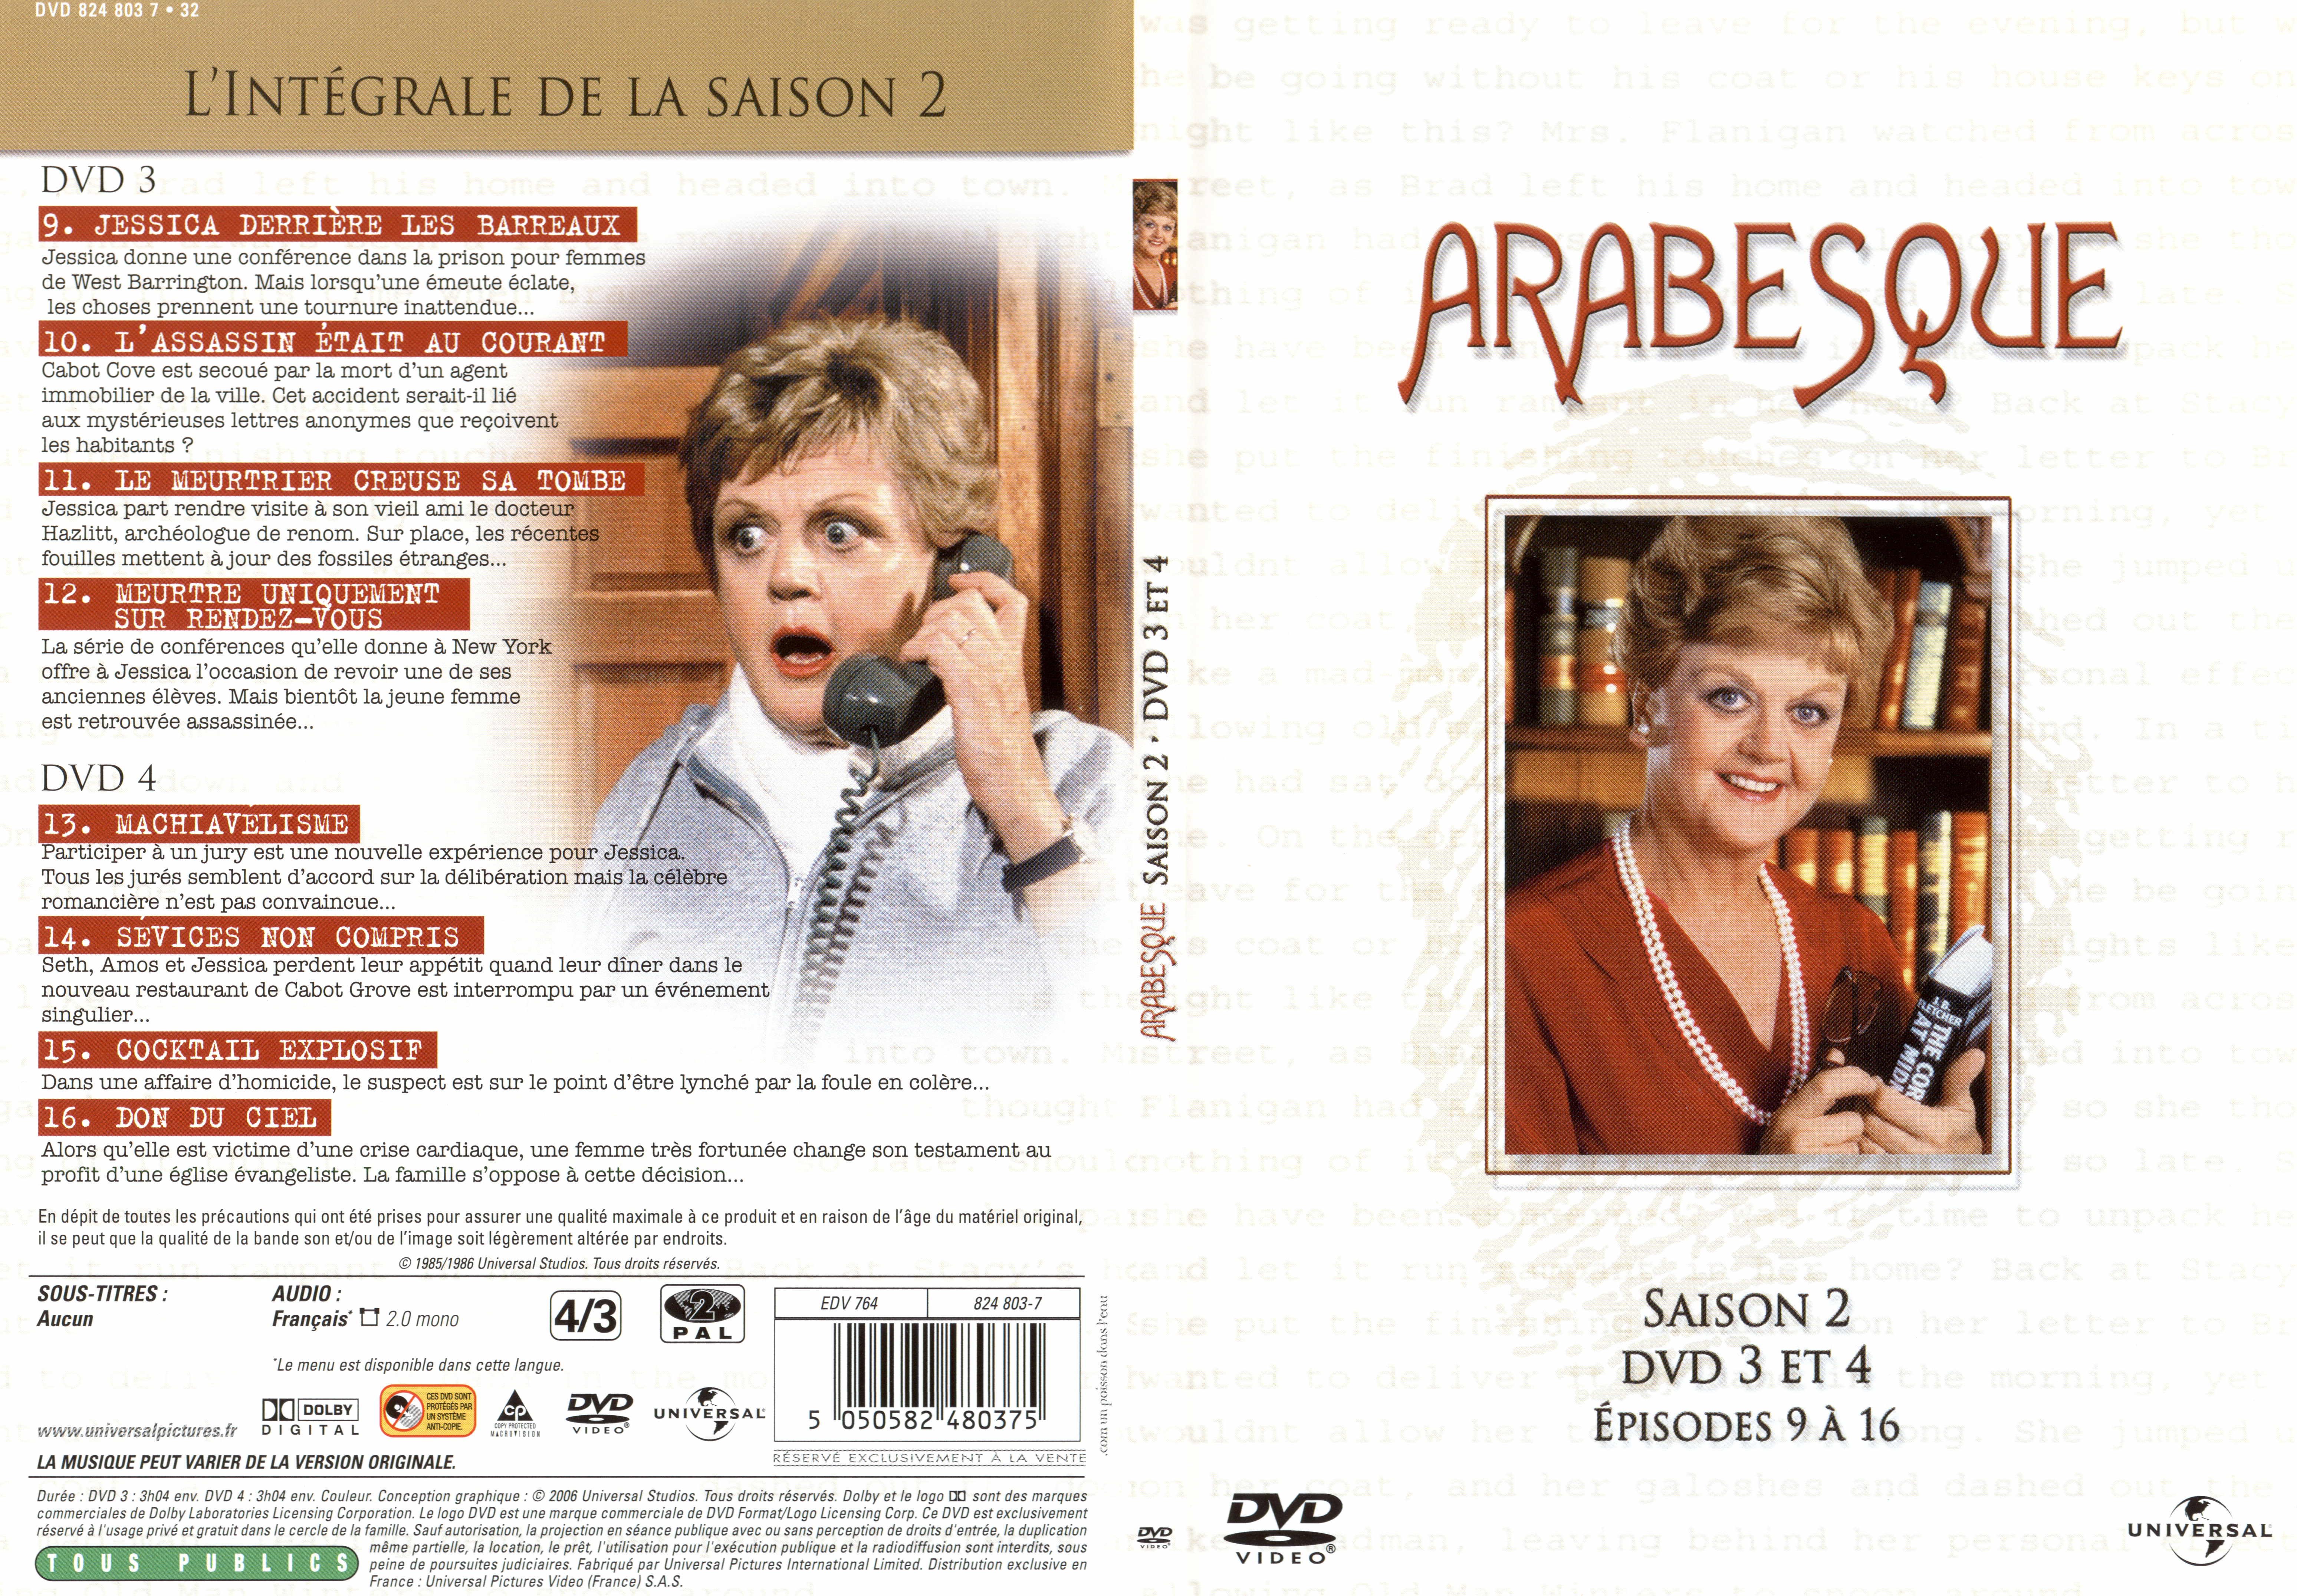 Jaquette DVD Arabesque Saison 2 DVD 3 et 4